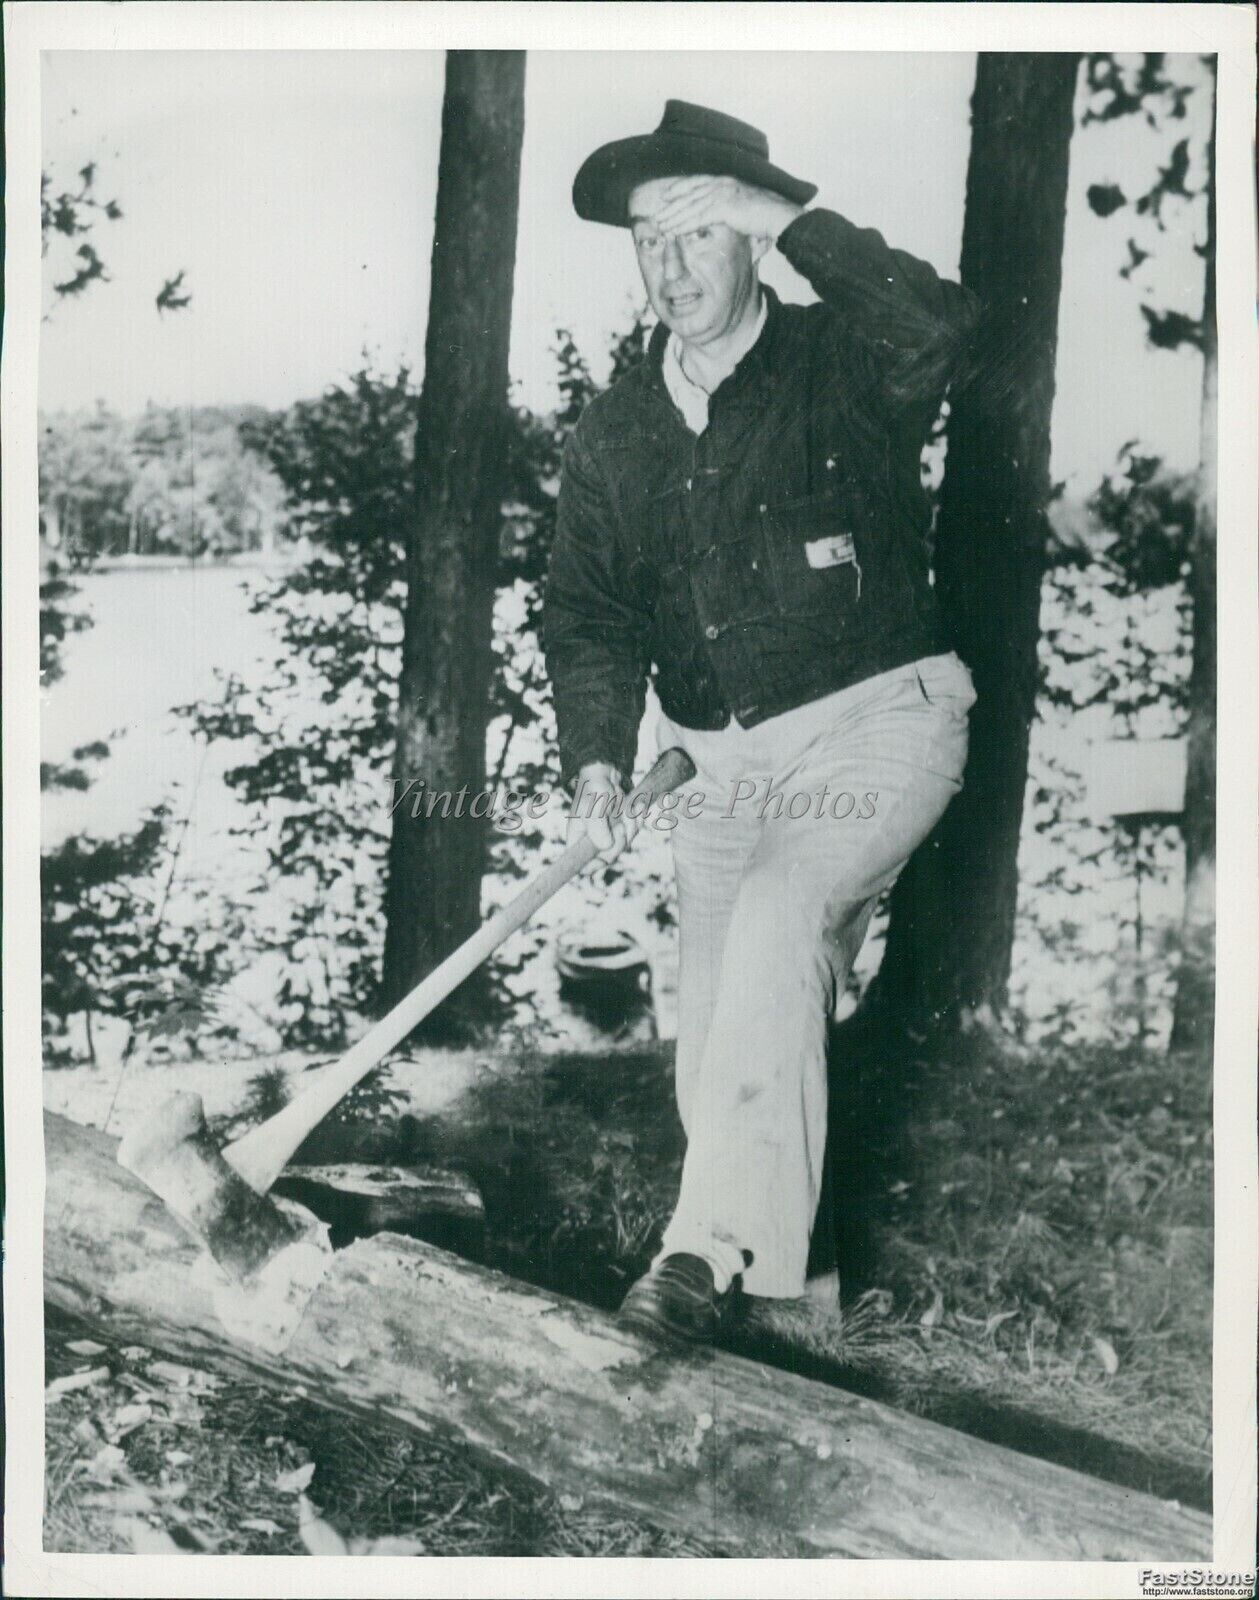 1952 Gov Adlai Stevenson Splits Rails On Minocqua Wi Vacation Politics 7X9 Photo